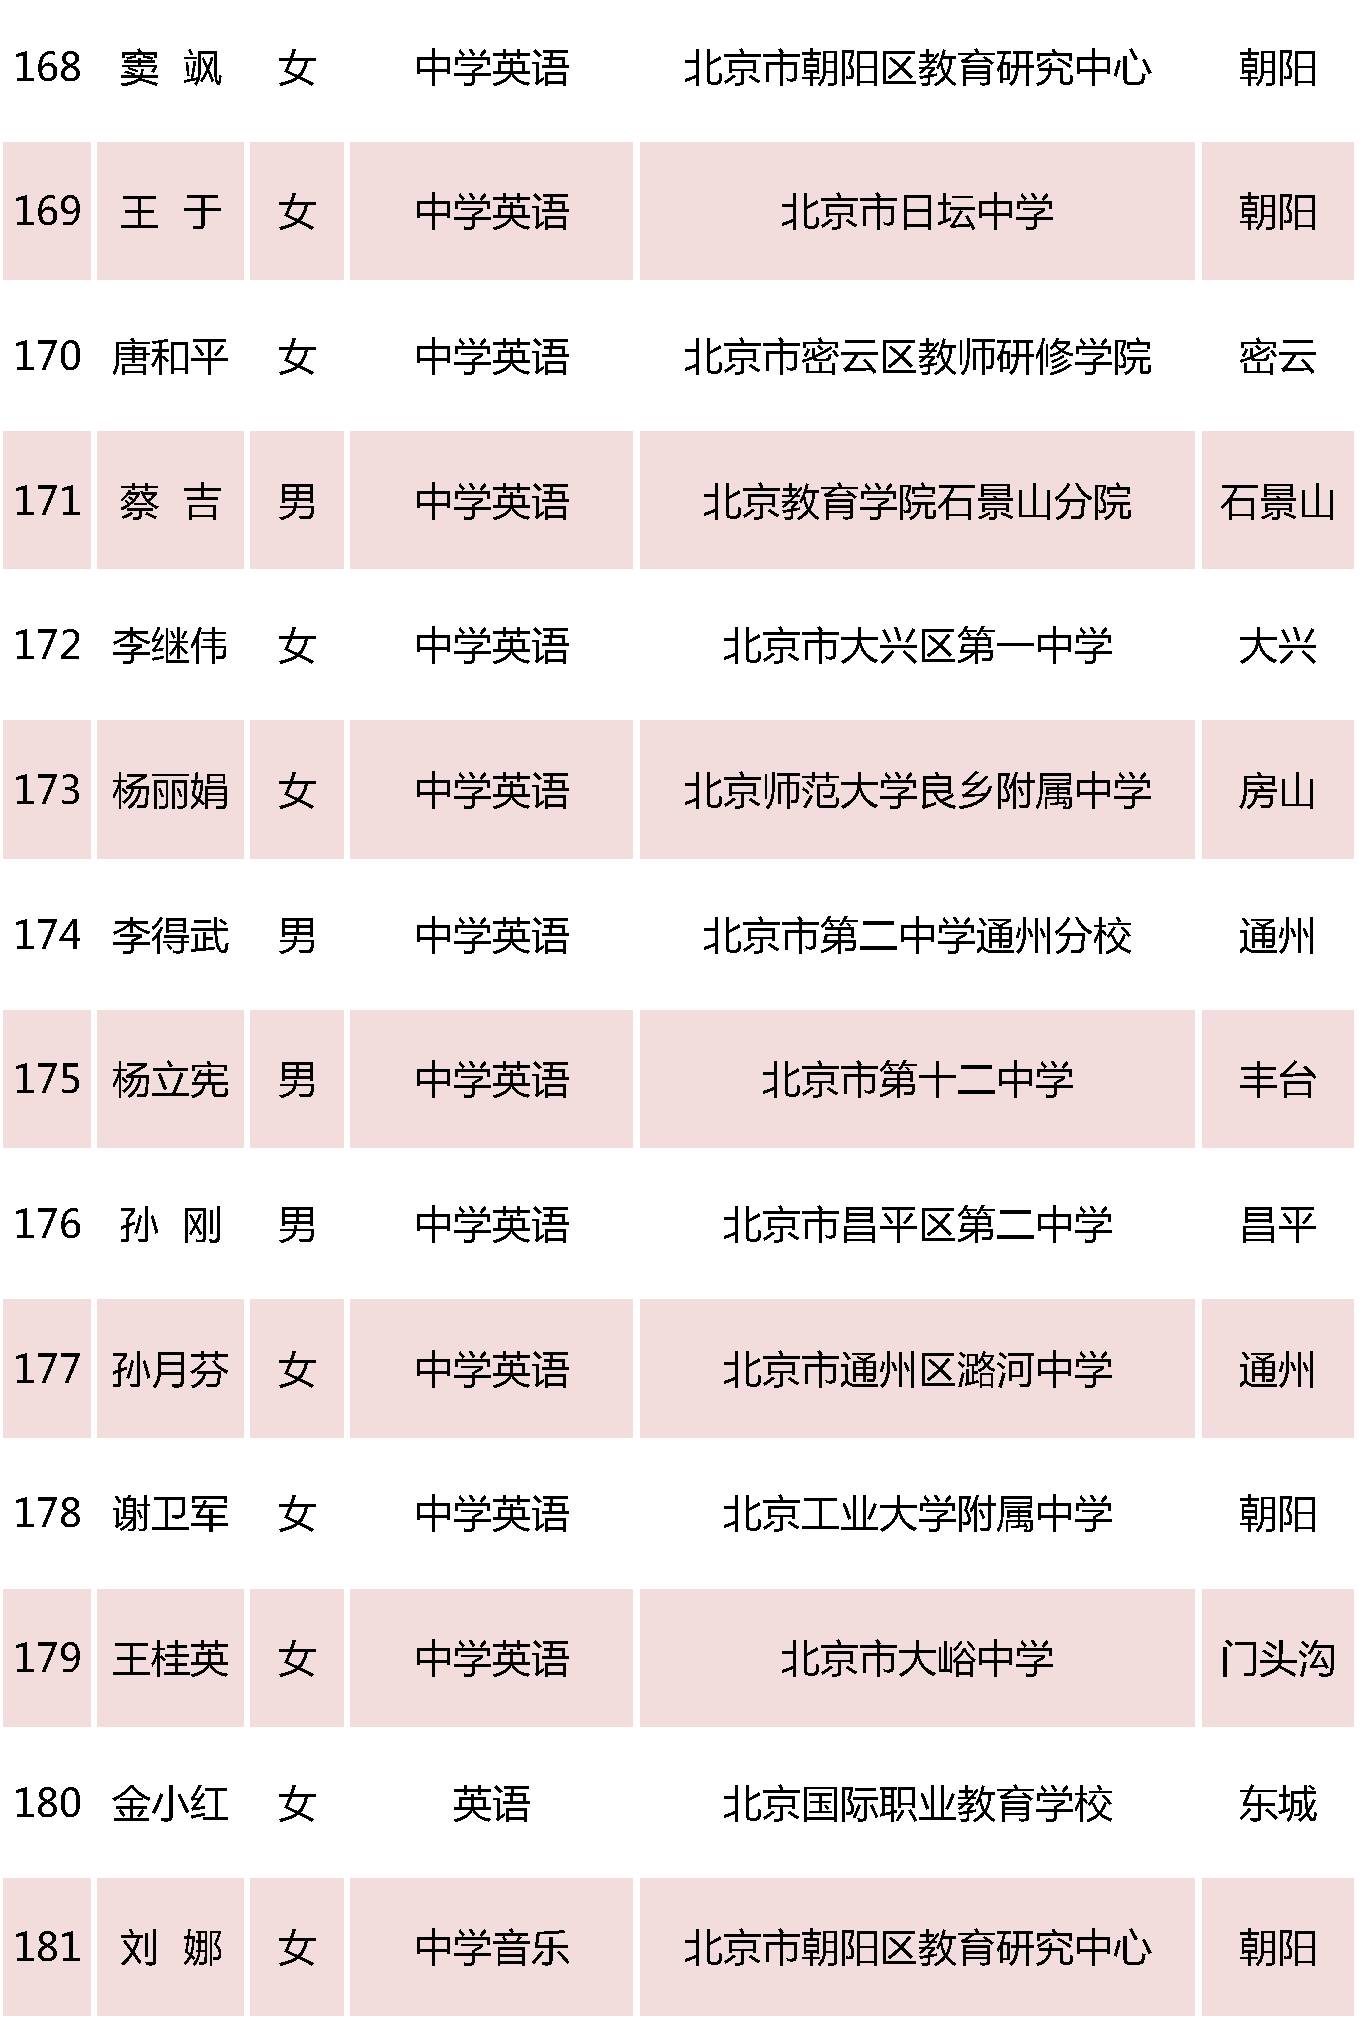 北京特级教师名单14